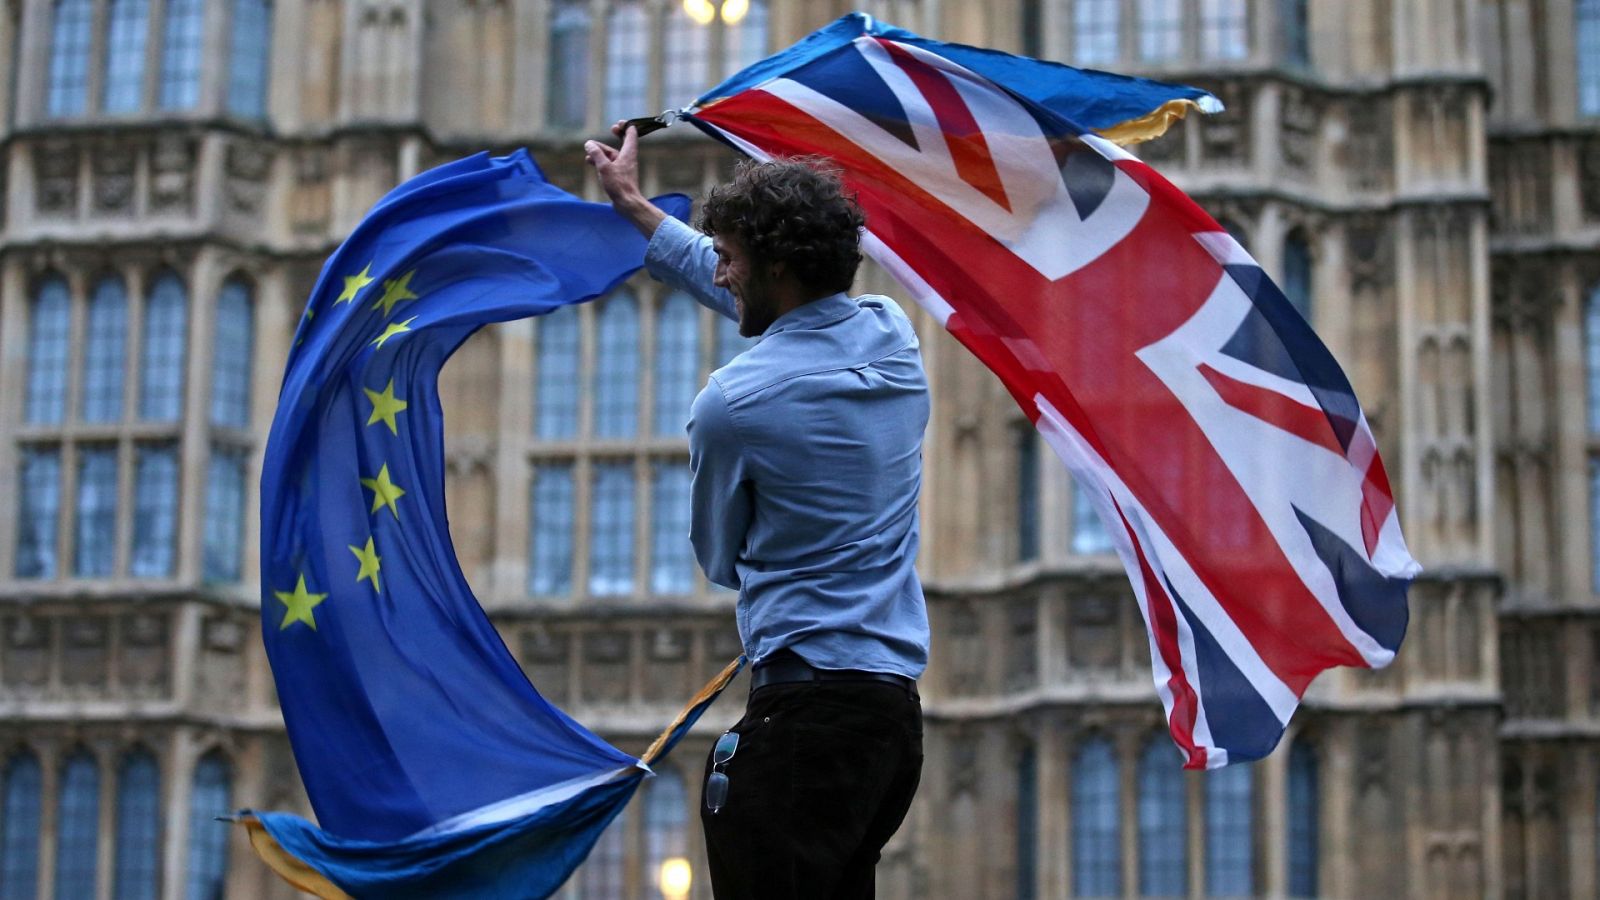 Banderas del Reino Unido y la Unión Europea frente al Parlamento británico